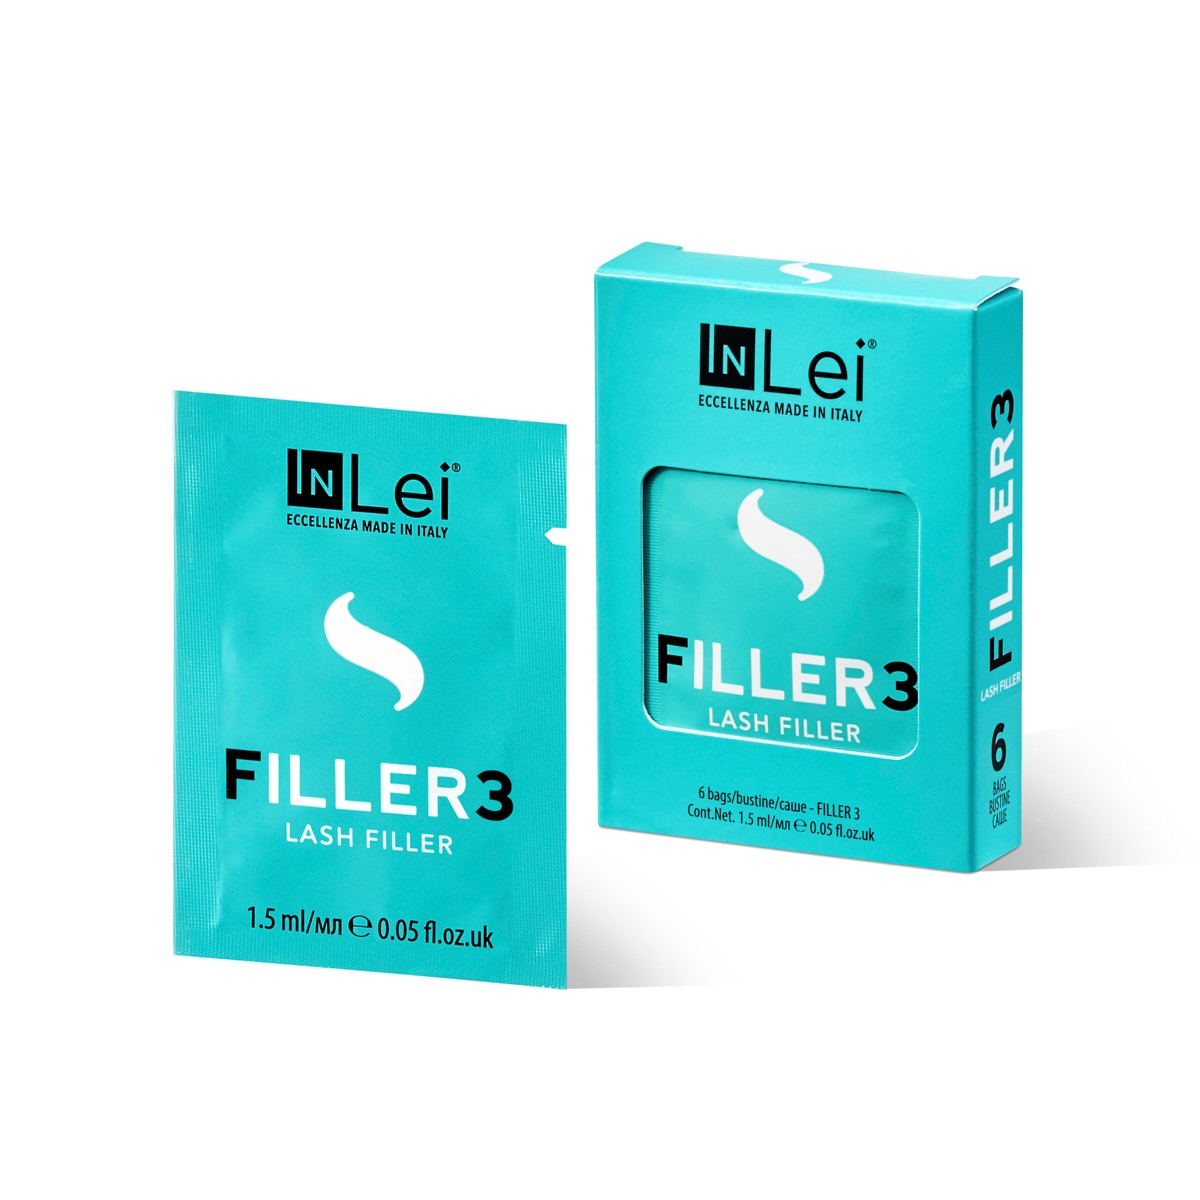 InLei® Филлер для ресниц “FILLER 3” упаковка 6 шт Х 1,5 мл